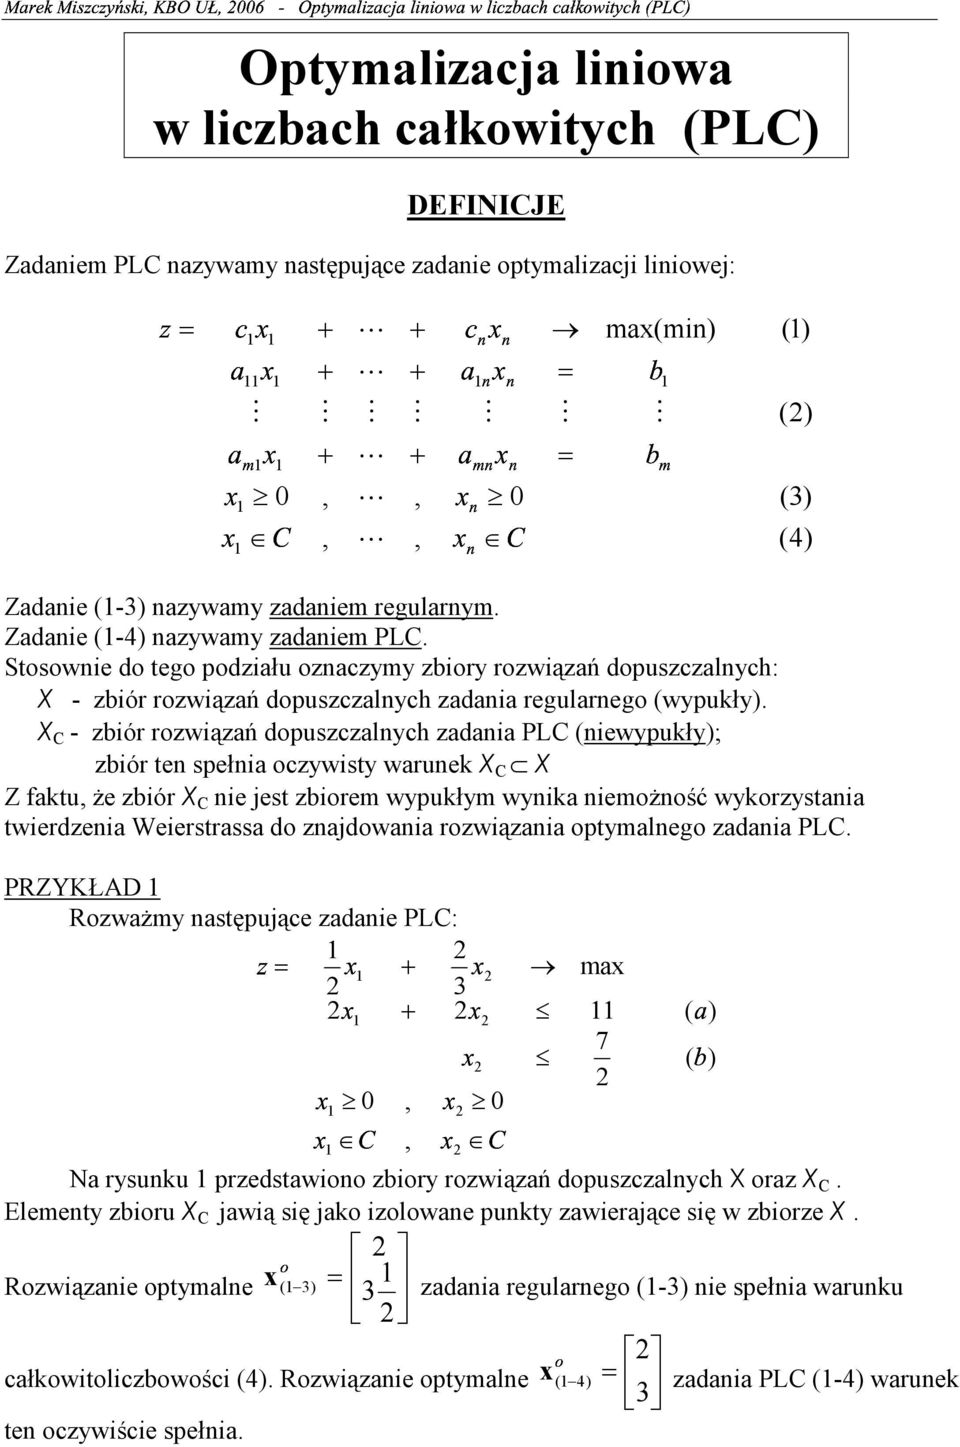 dopuszczalnych: X - zbiór rozwiązań dopuszczalnych zadania regularnego (wypukły) X C - zbiór rozwiązań dopuszczalnych zadania PLC (niewypukły); zbiór ten spełnia oczywisty warunek X C X Z faktu że